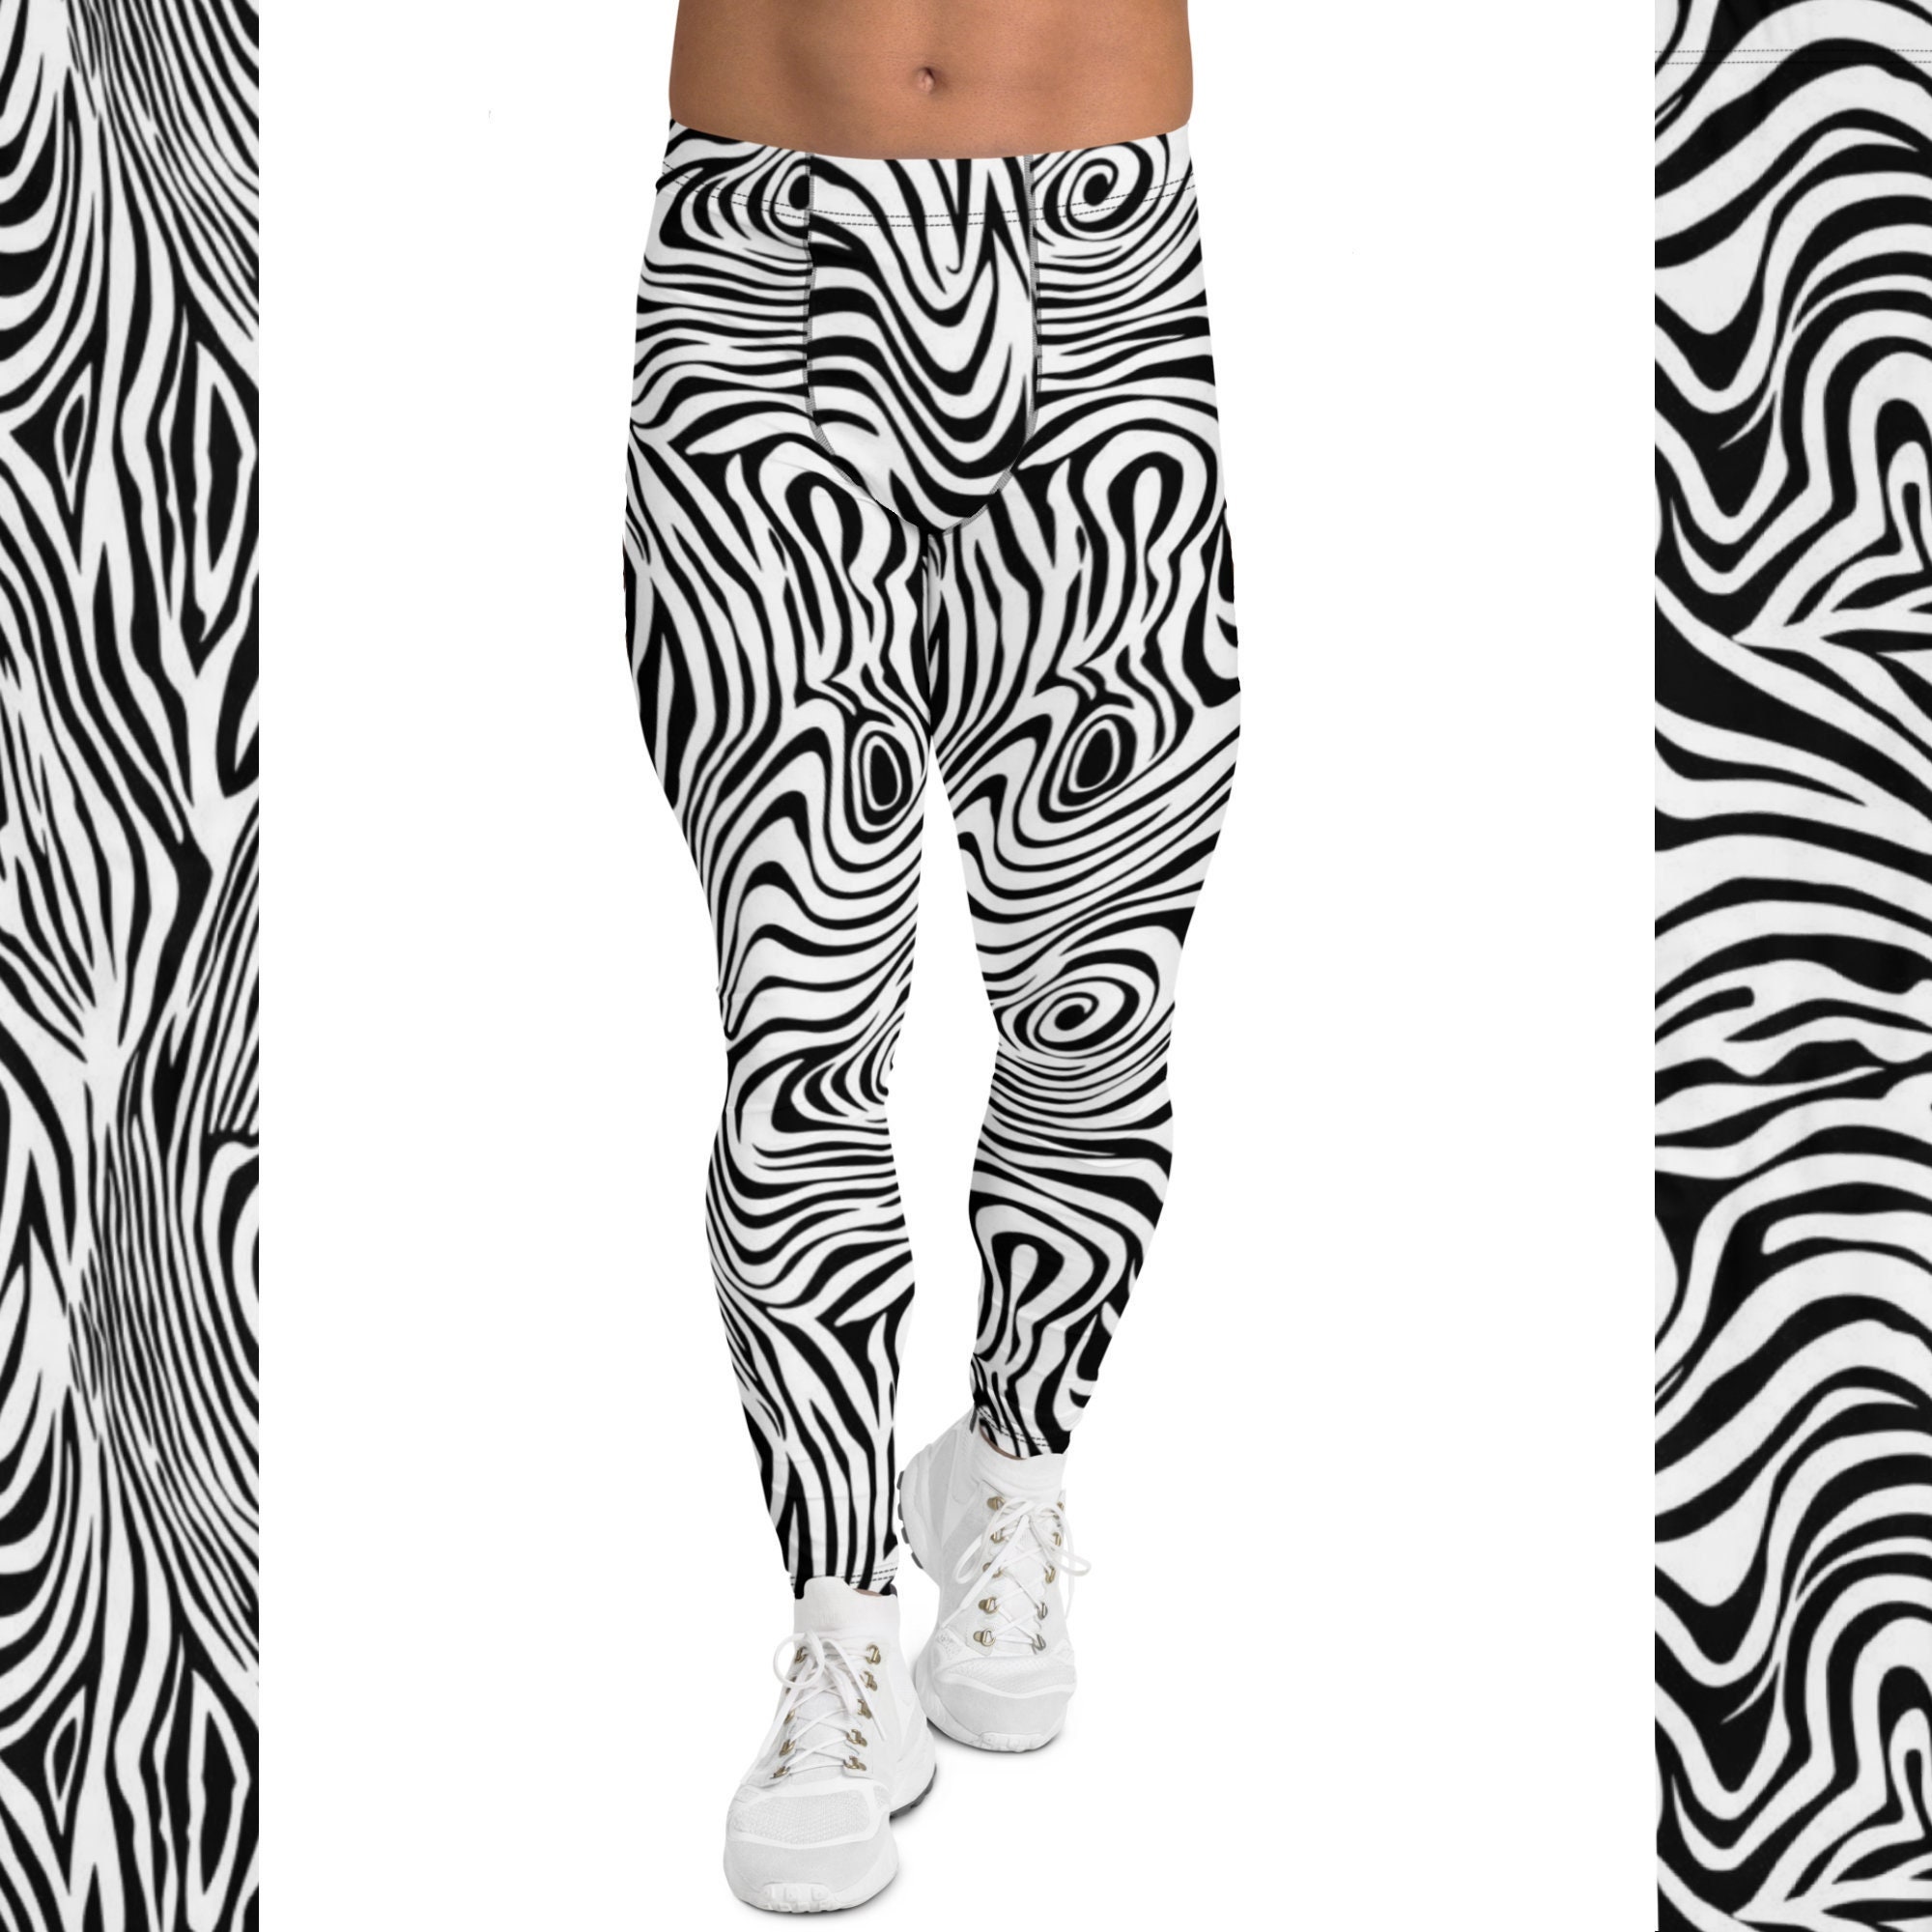 80s zebra print leggings  Zebra print leggings, Printed leggings, Zebra  print